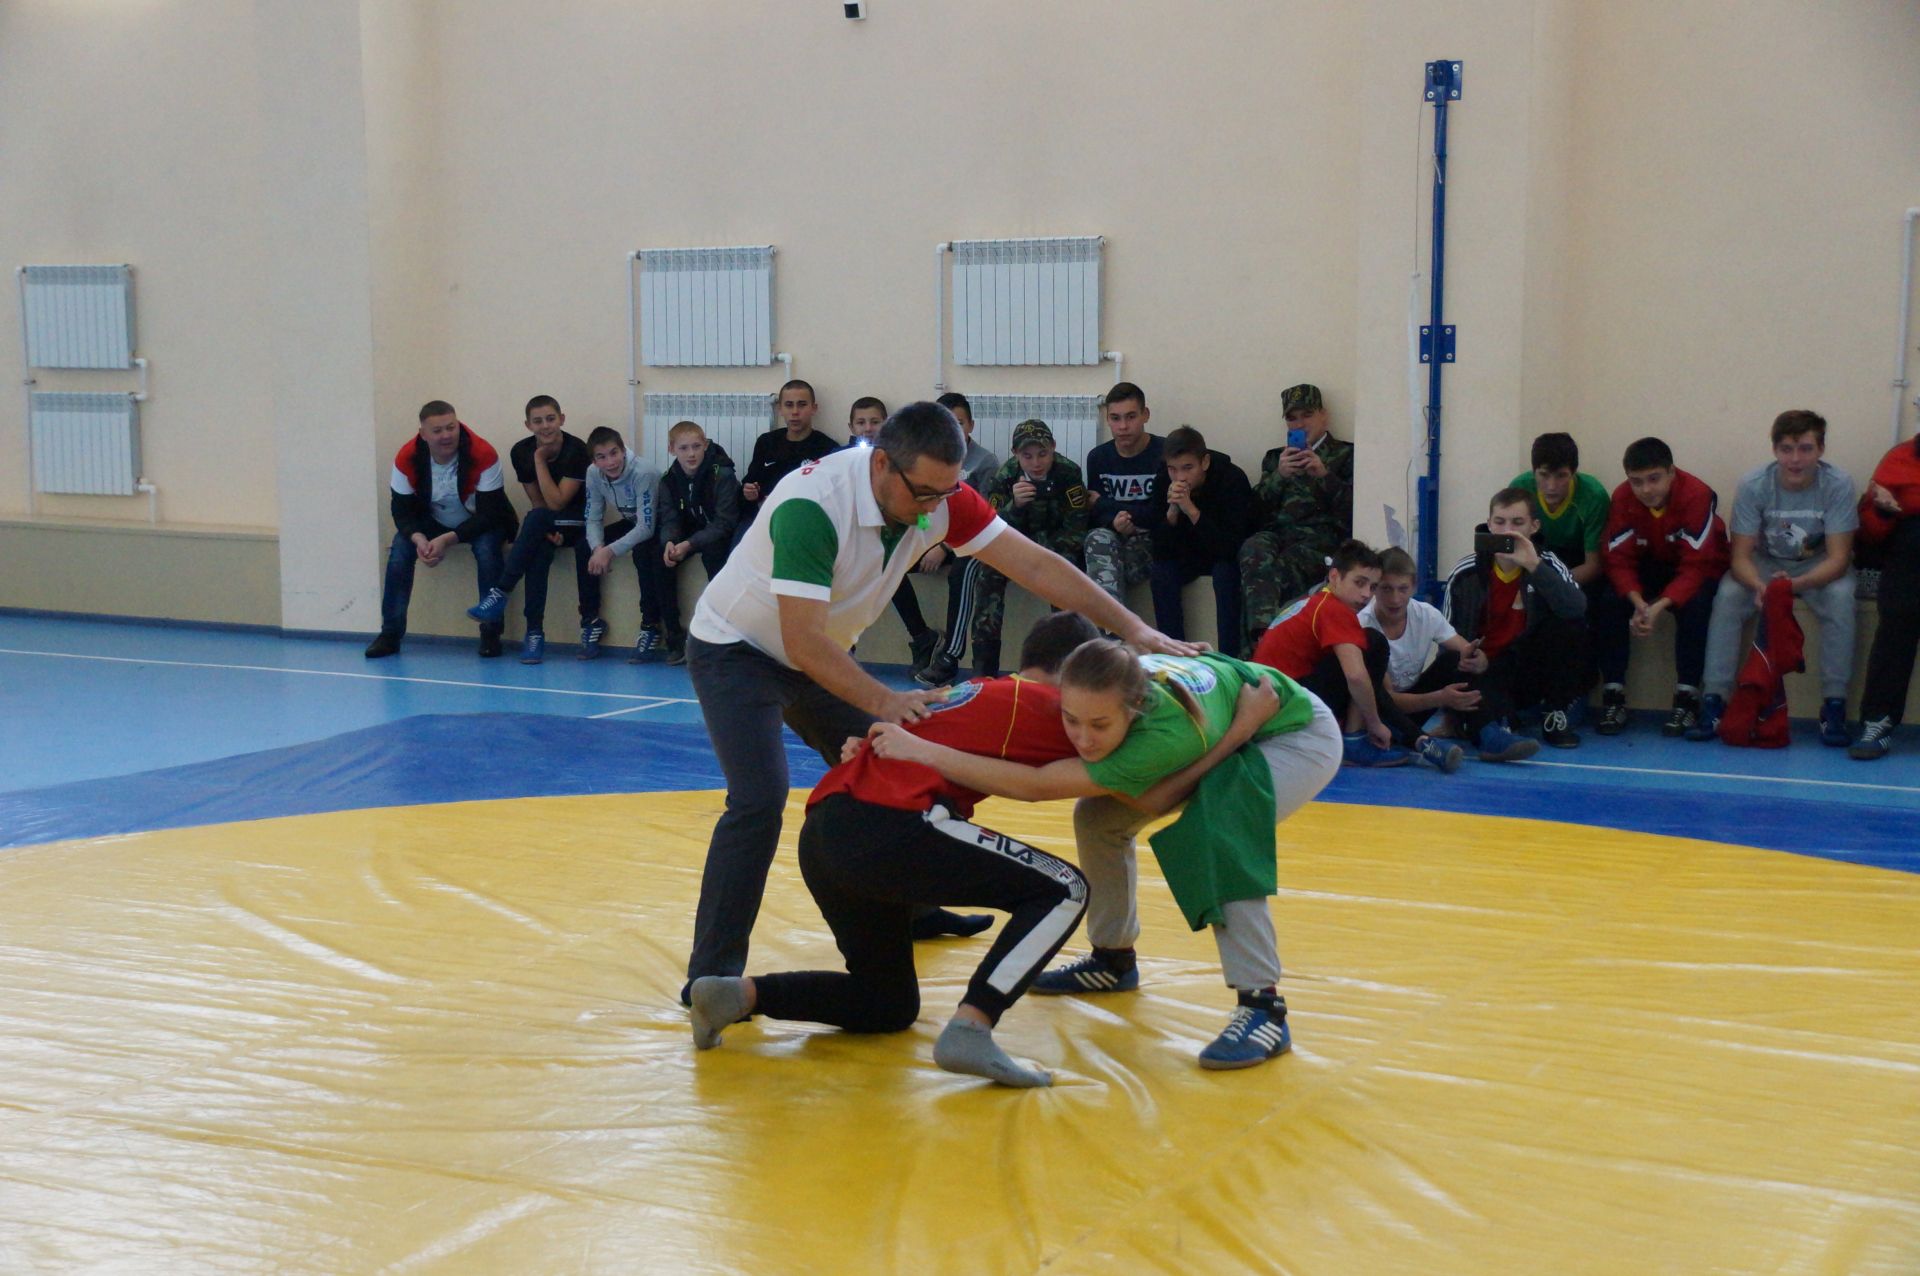 В Шалях прошел восьмой открытый турнир по борьбе «Корэш»